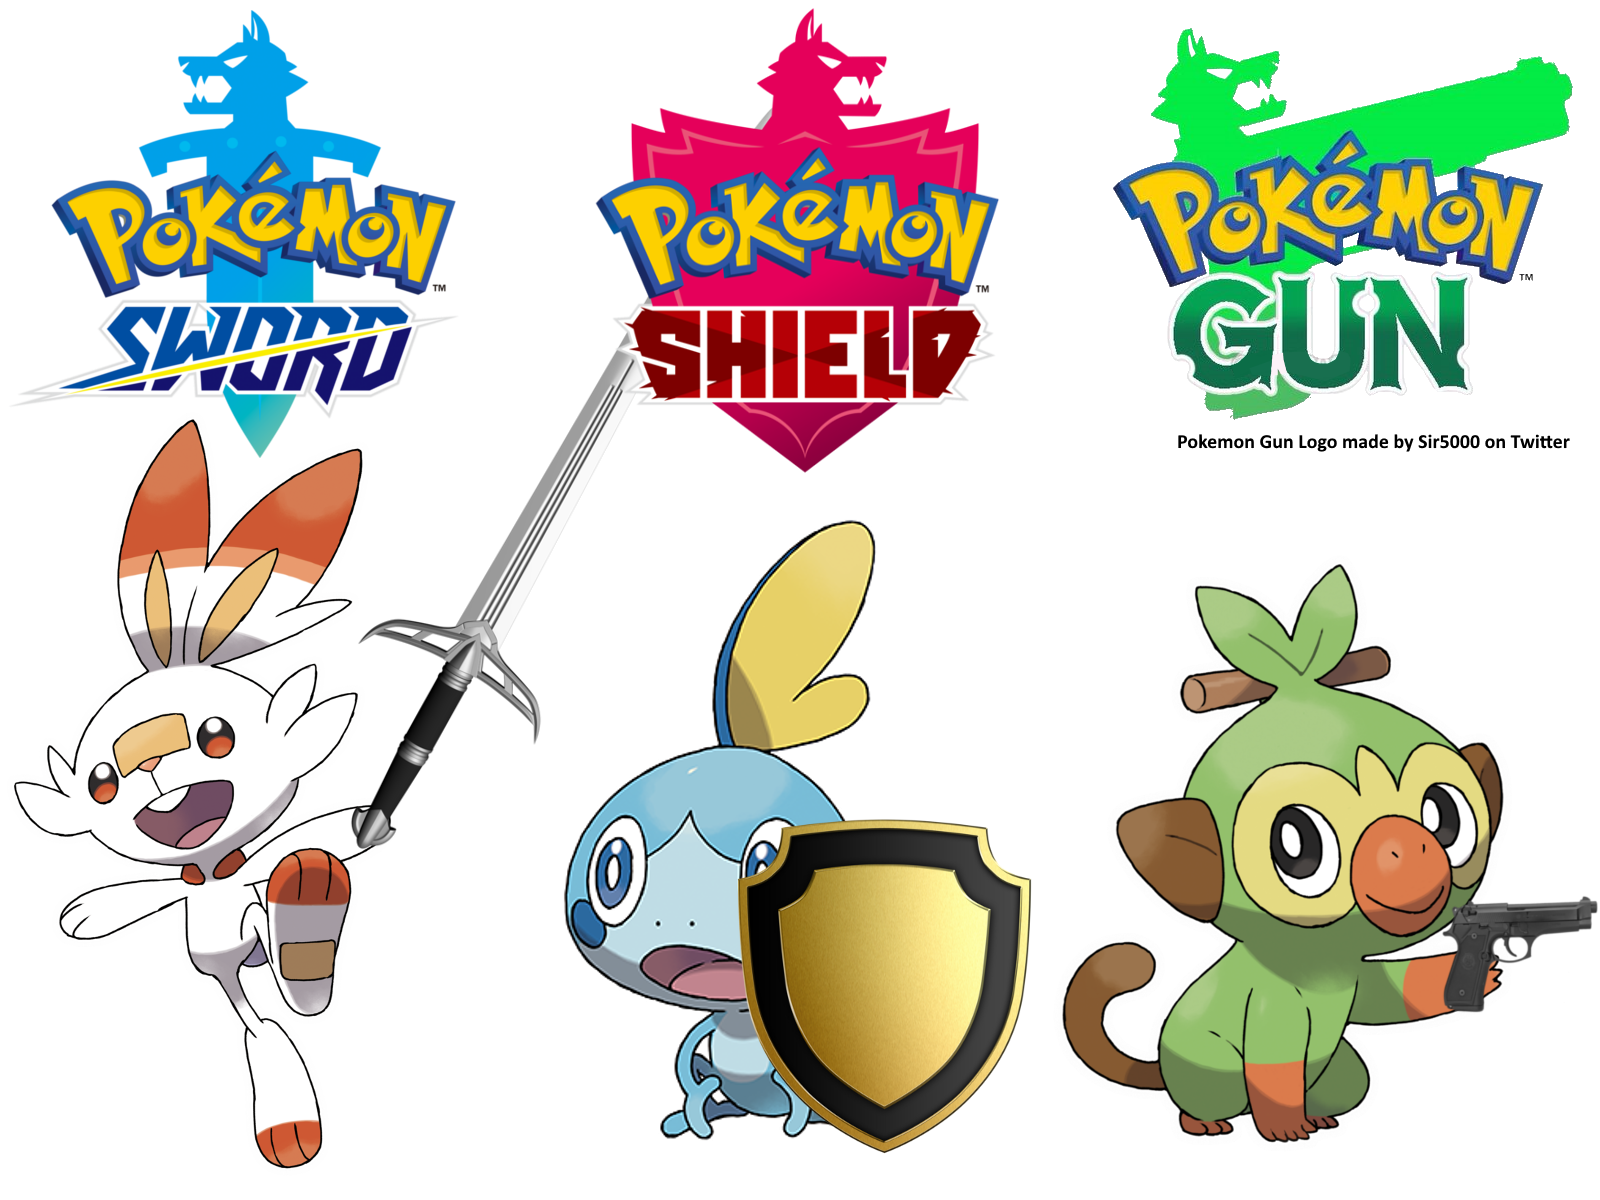 Покемоны sword. Pokémon Sword и Shield. Покемон Sword and Shield покемоны. Покемон щит. Покемон меч и щит.